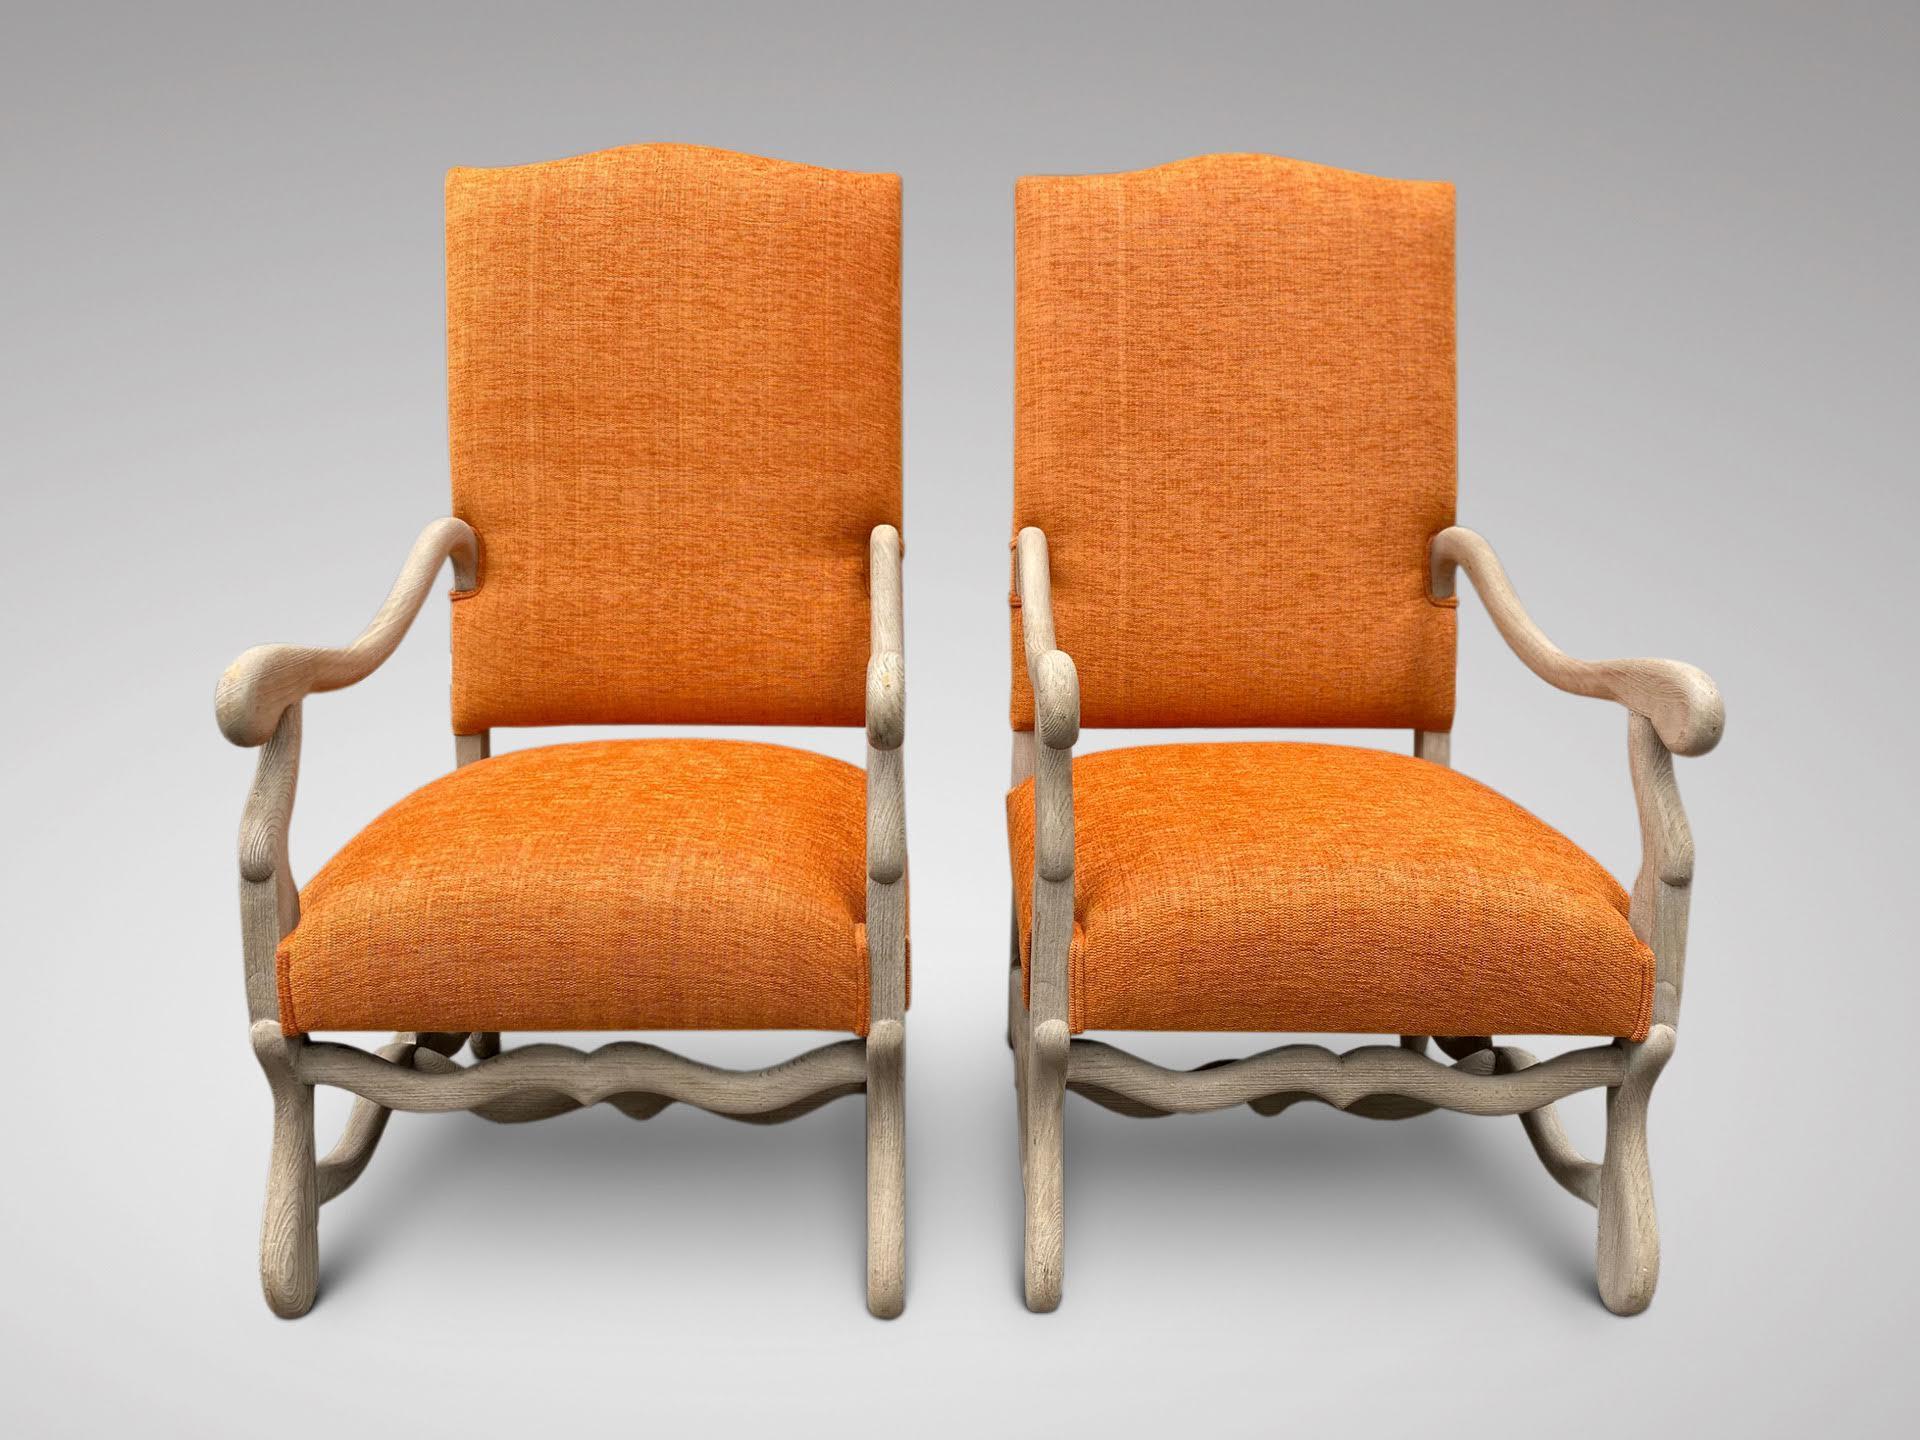 Une superbe paire de fauteuils anciens en noyer français du 19ème siècle, de style Louis XIV, remeublés dans un tissu de qualité de couleur orange. Les bras sont façonnés et reposent sur d'élégants pieds en forme de volute unis par un brancard